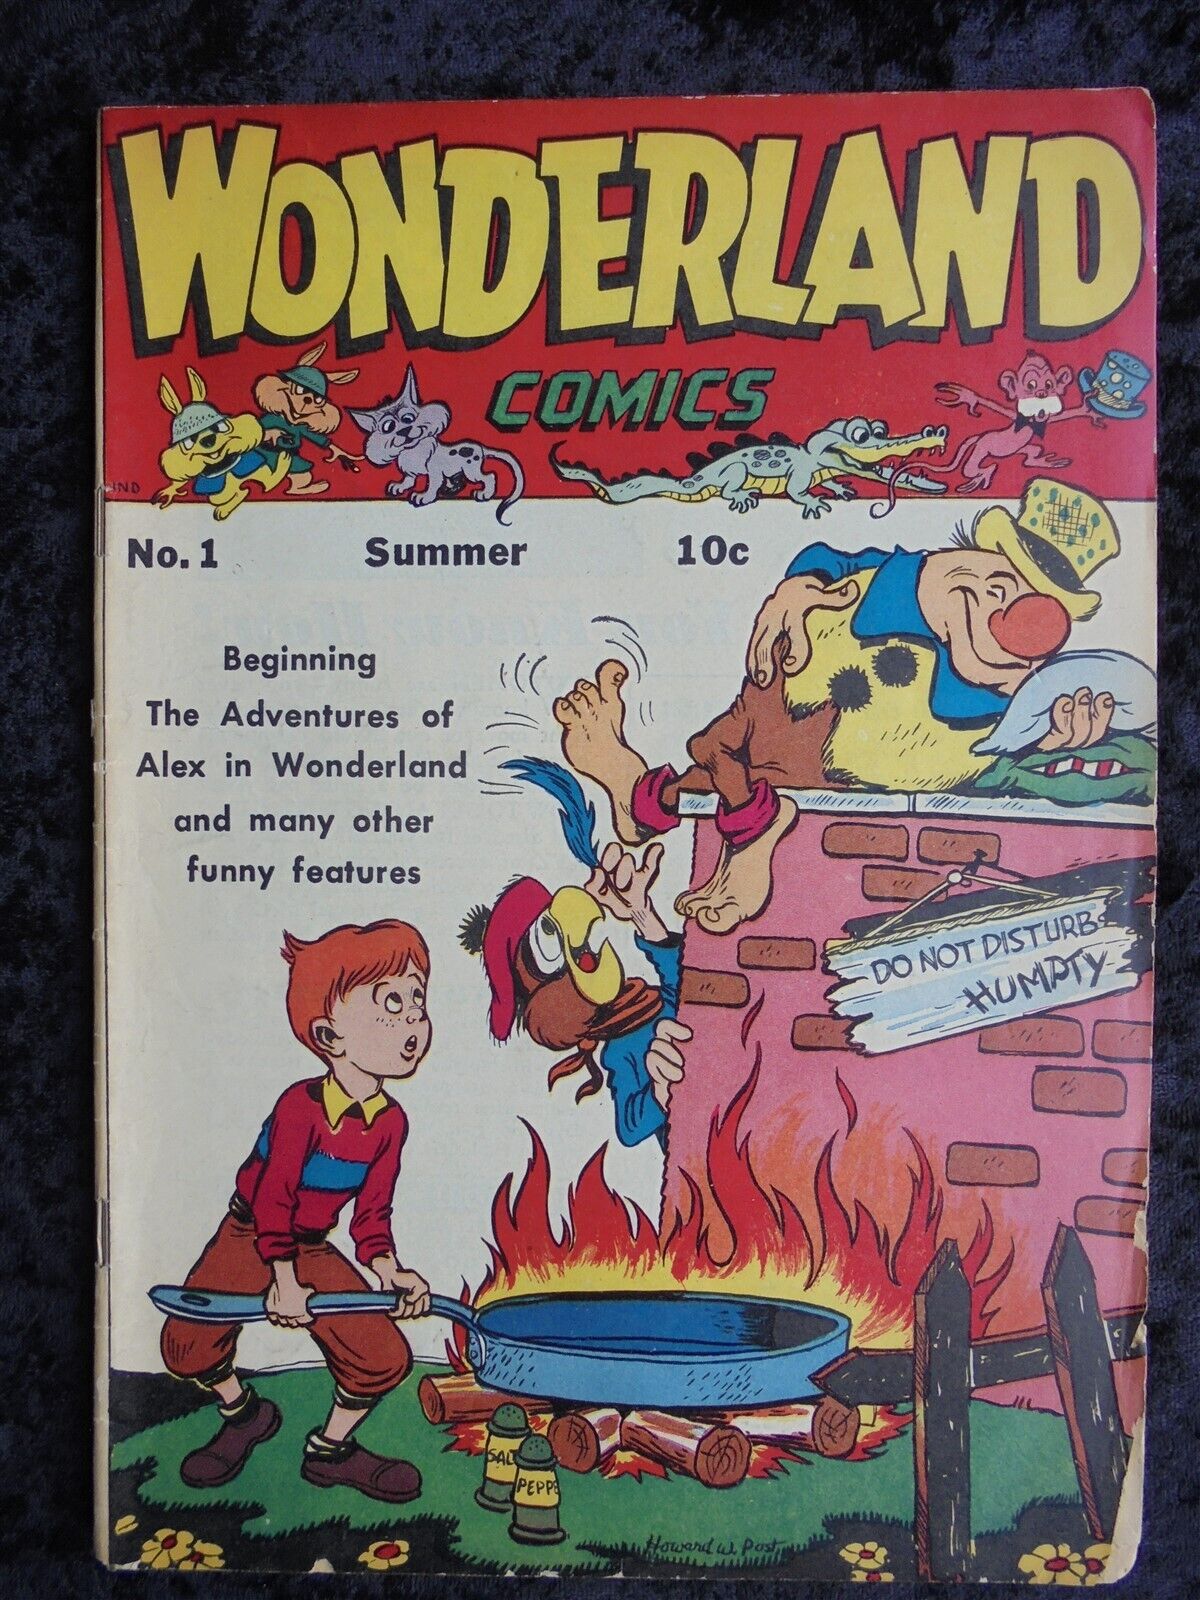 WONDERLAND COMICS #1 1945 FEATURE PUBLICATIONS GOLDEN AGE COMIC